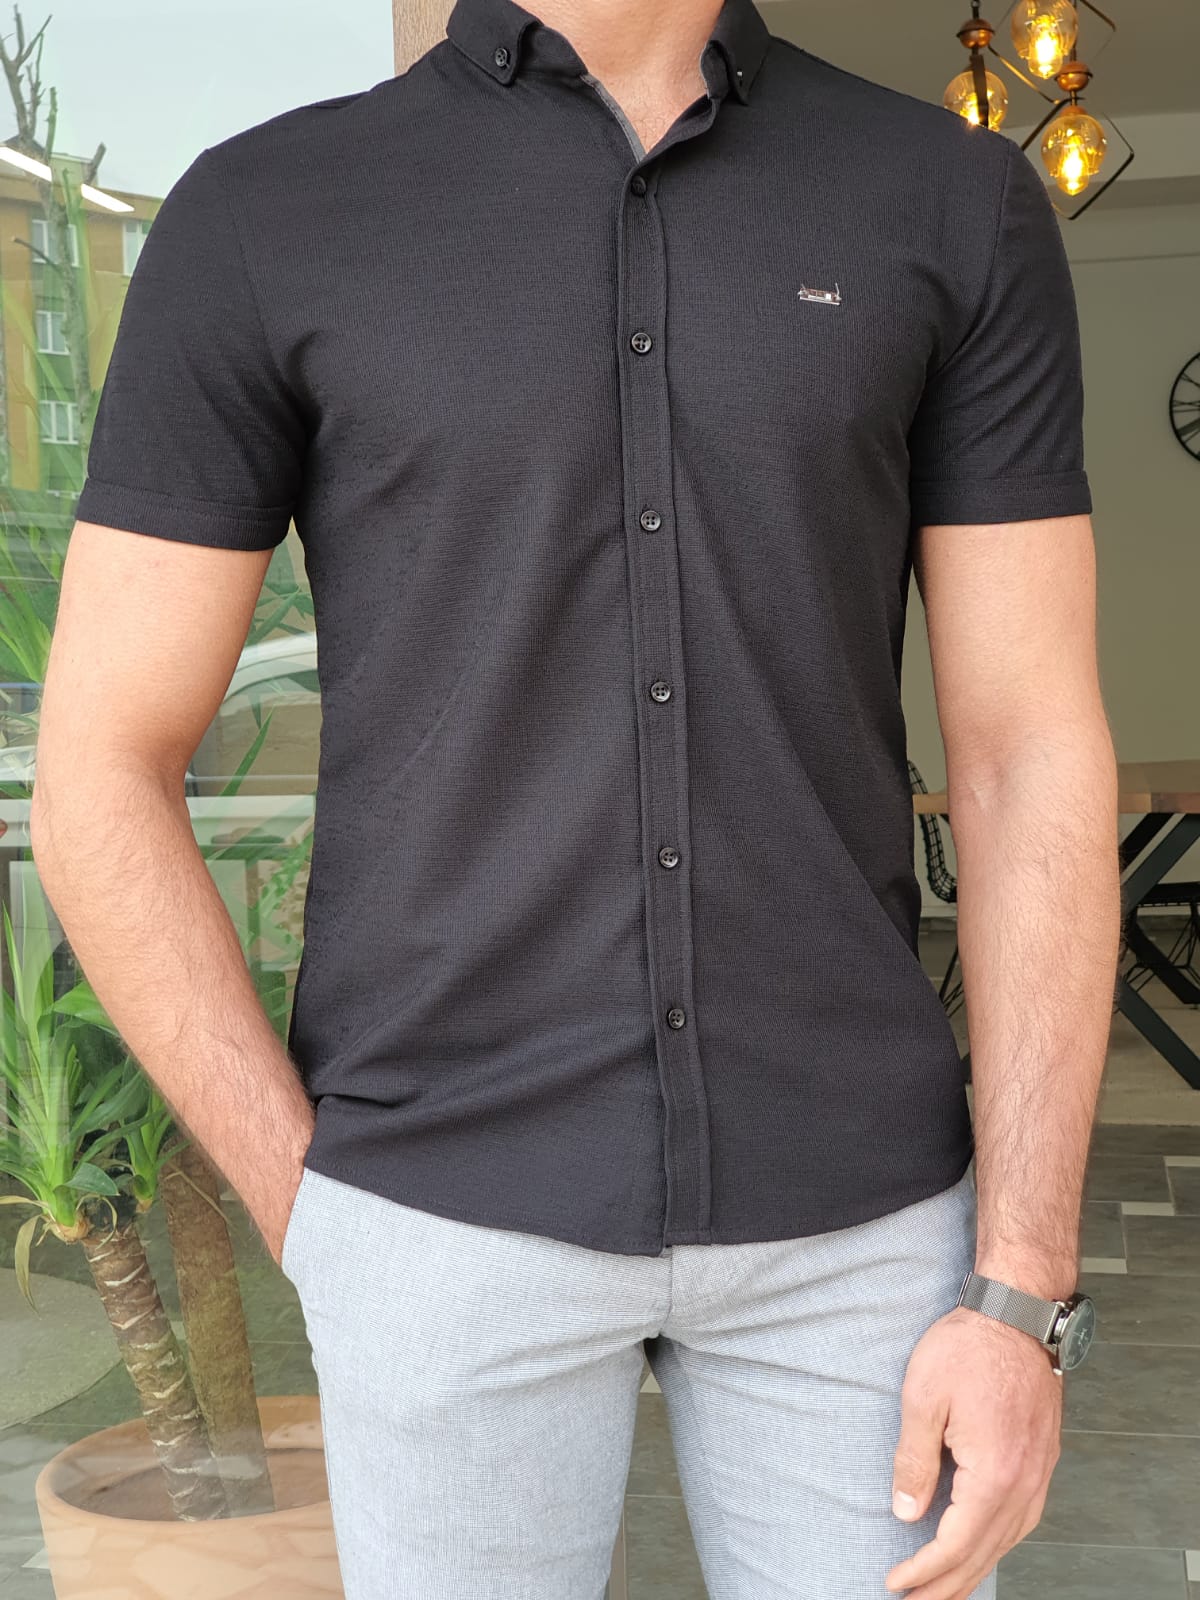 Hardol Slim Fit Self Patterned Short Sleeve Black Shirt – MCR TAILOR